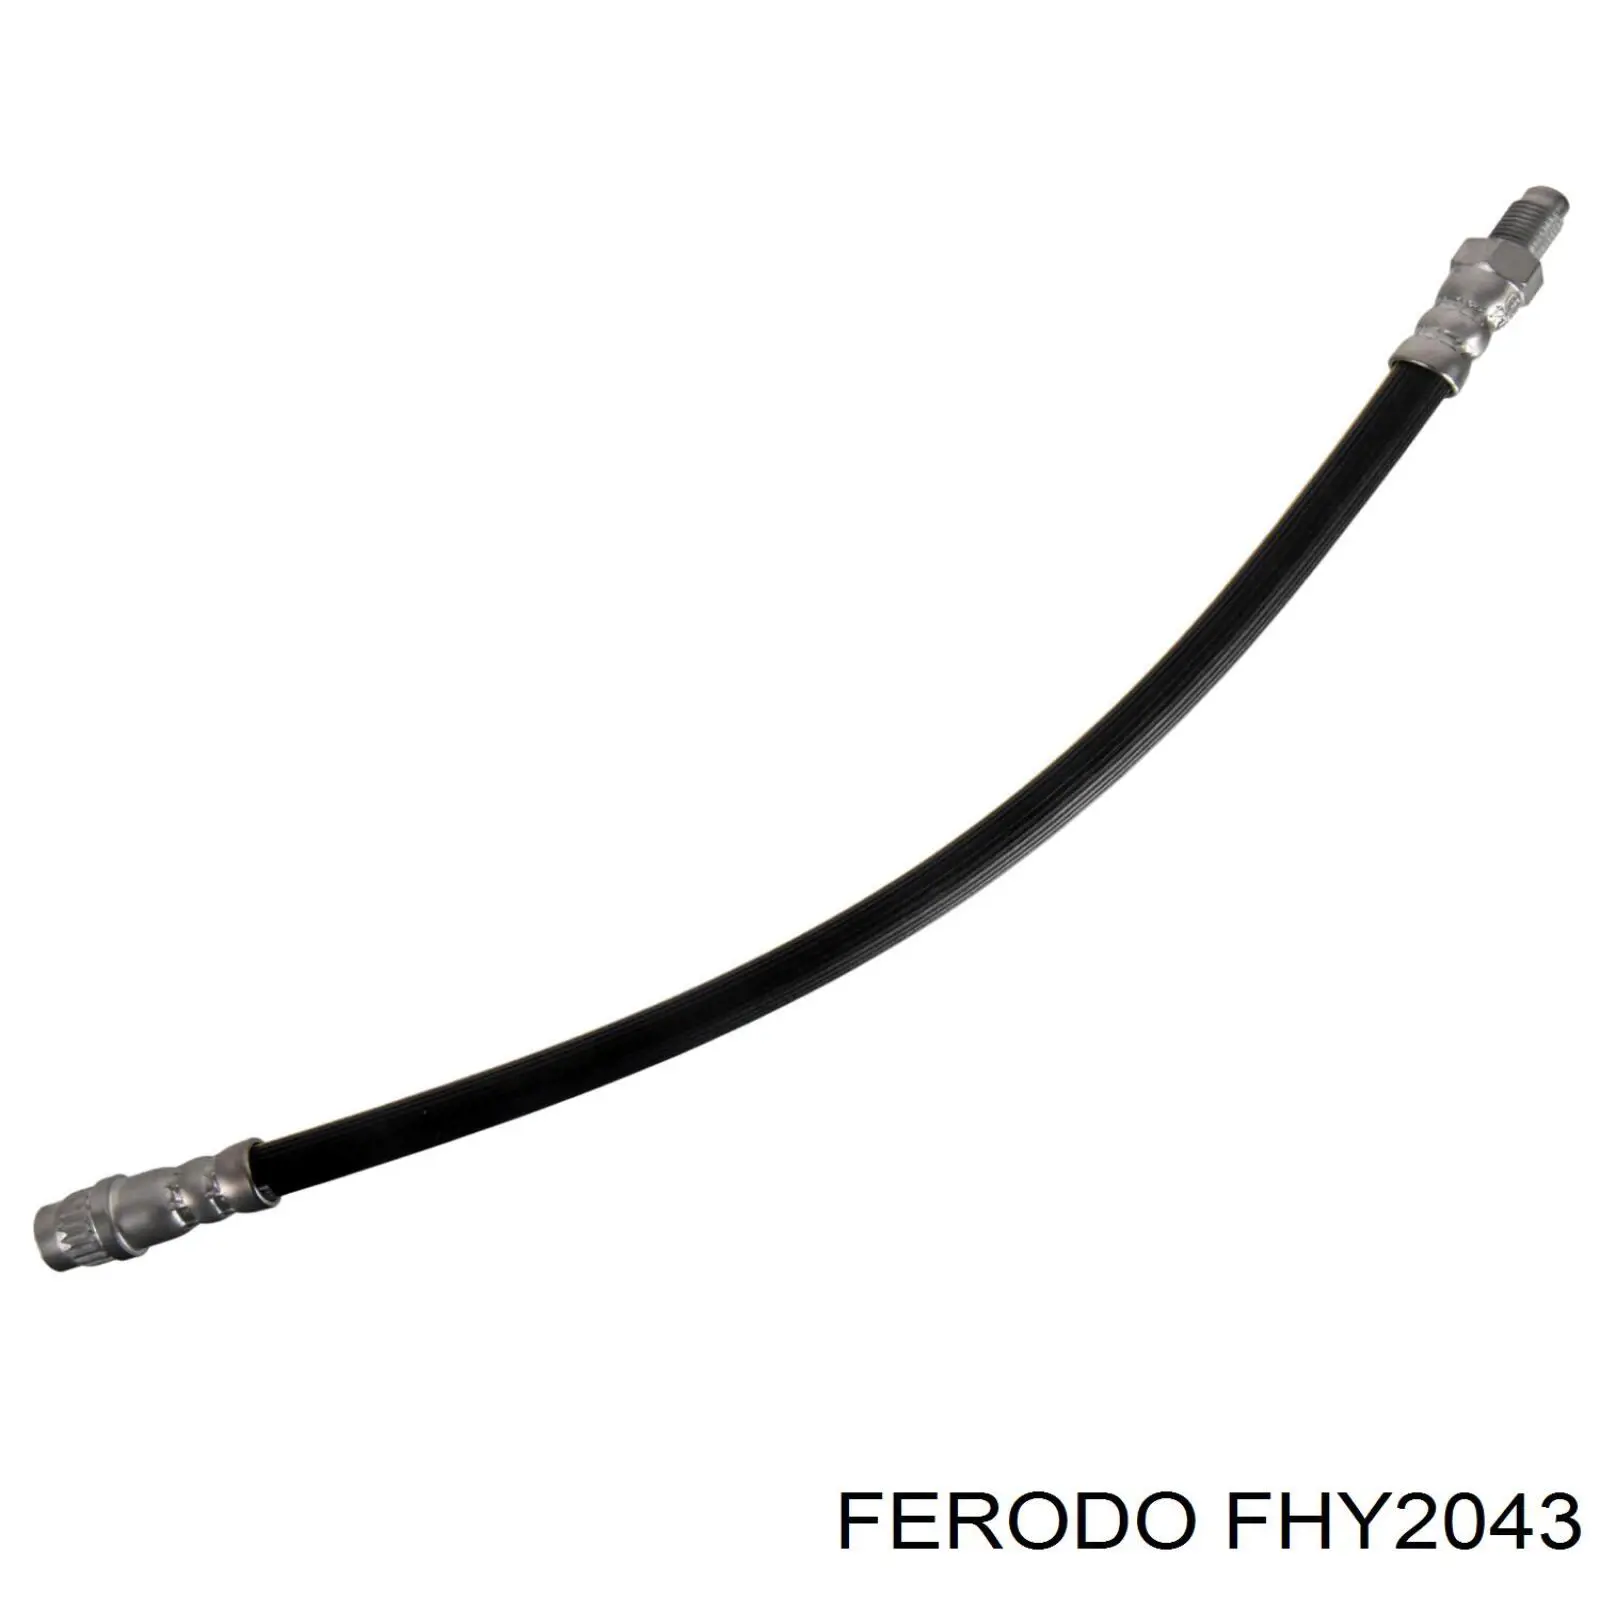 FHY2043 Ferodo latiguillo de freno delantero